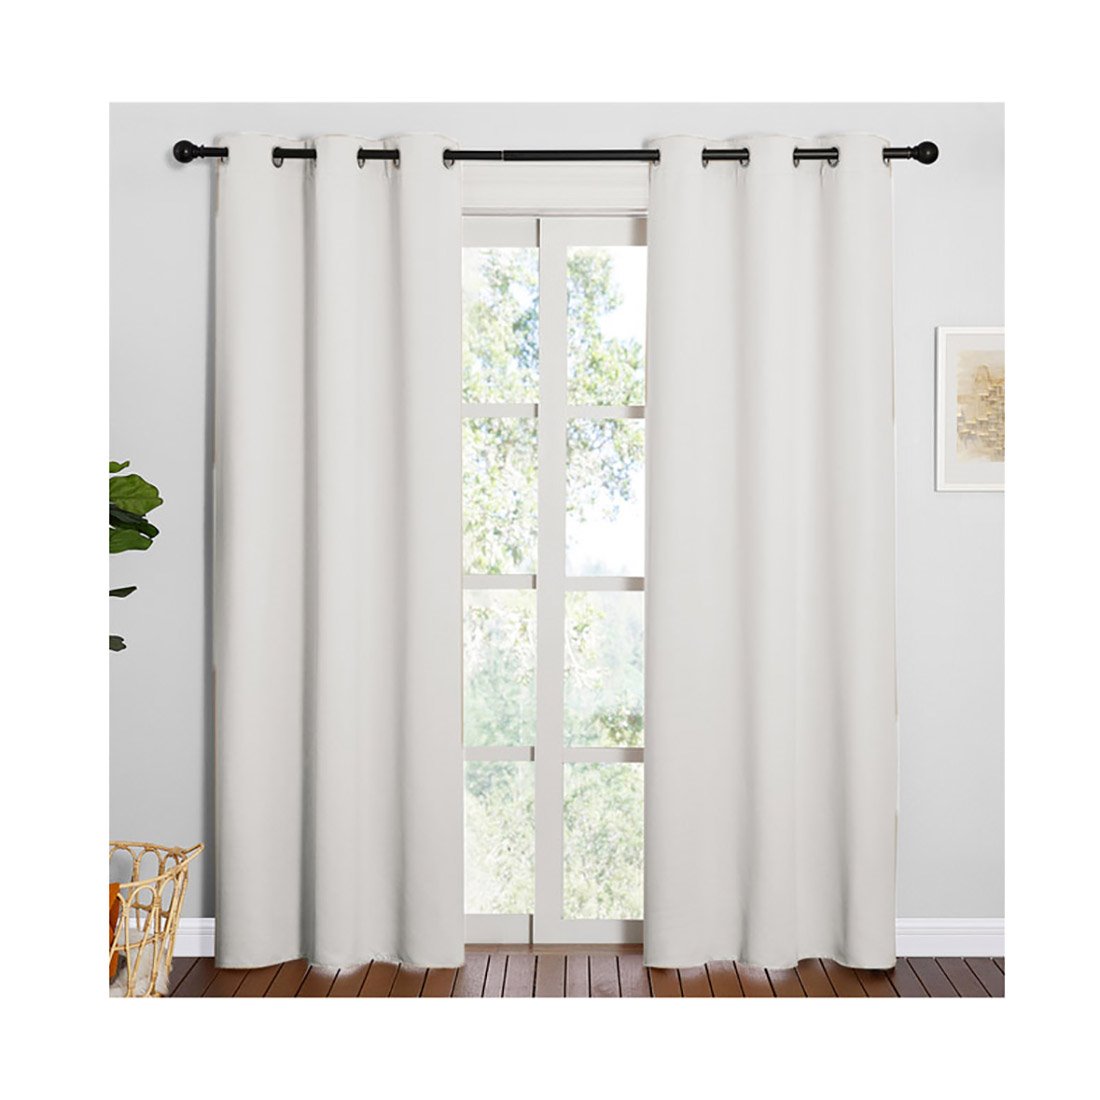 Barras de cortina de todos tamaños - Conforama